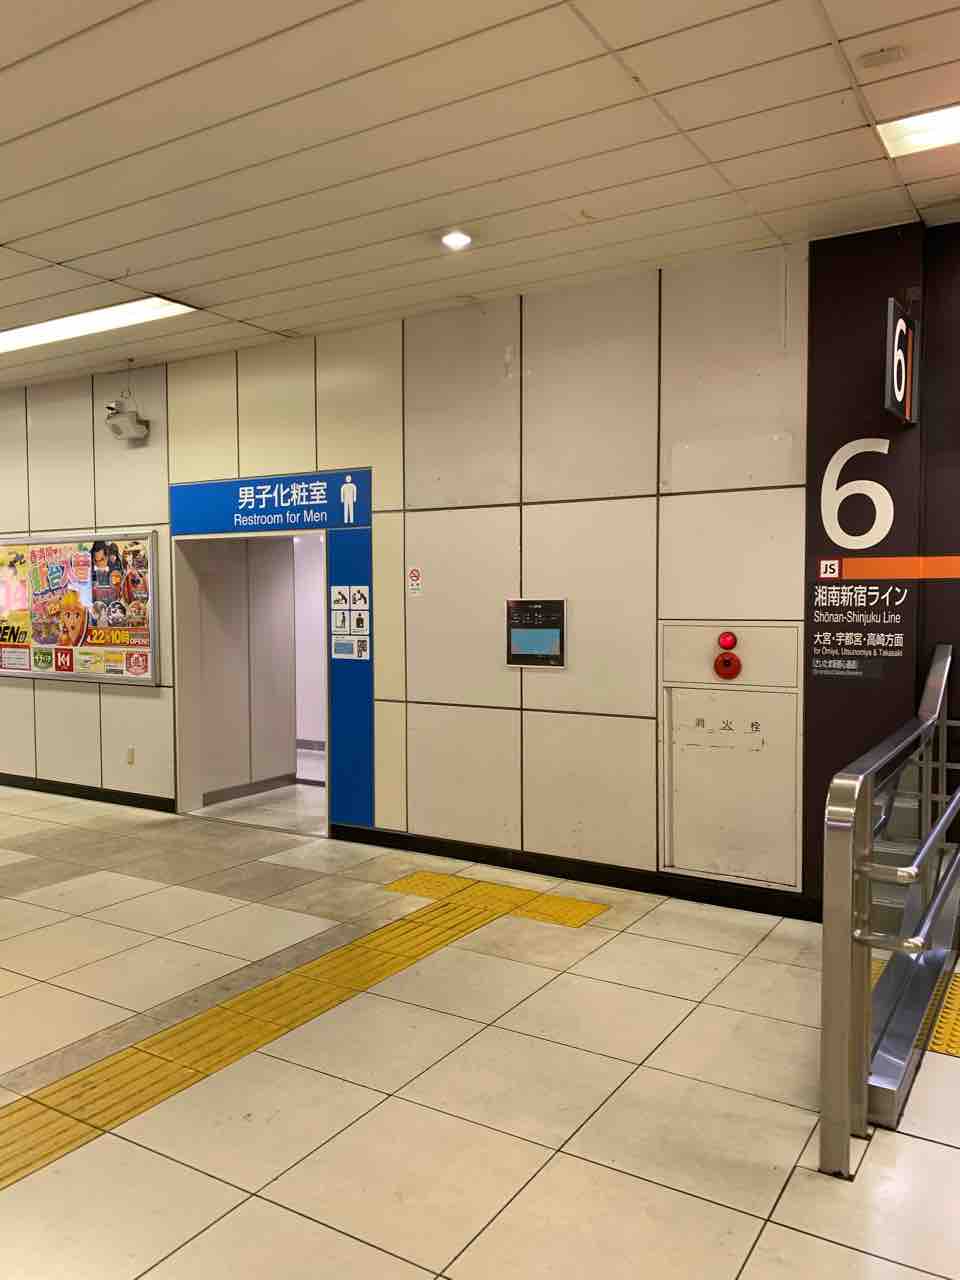 Jr赤羽駅 改札内の多目的トイレ オストメイトの情報発信メディア オスとぴ